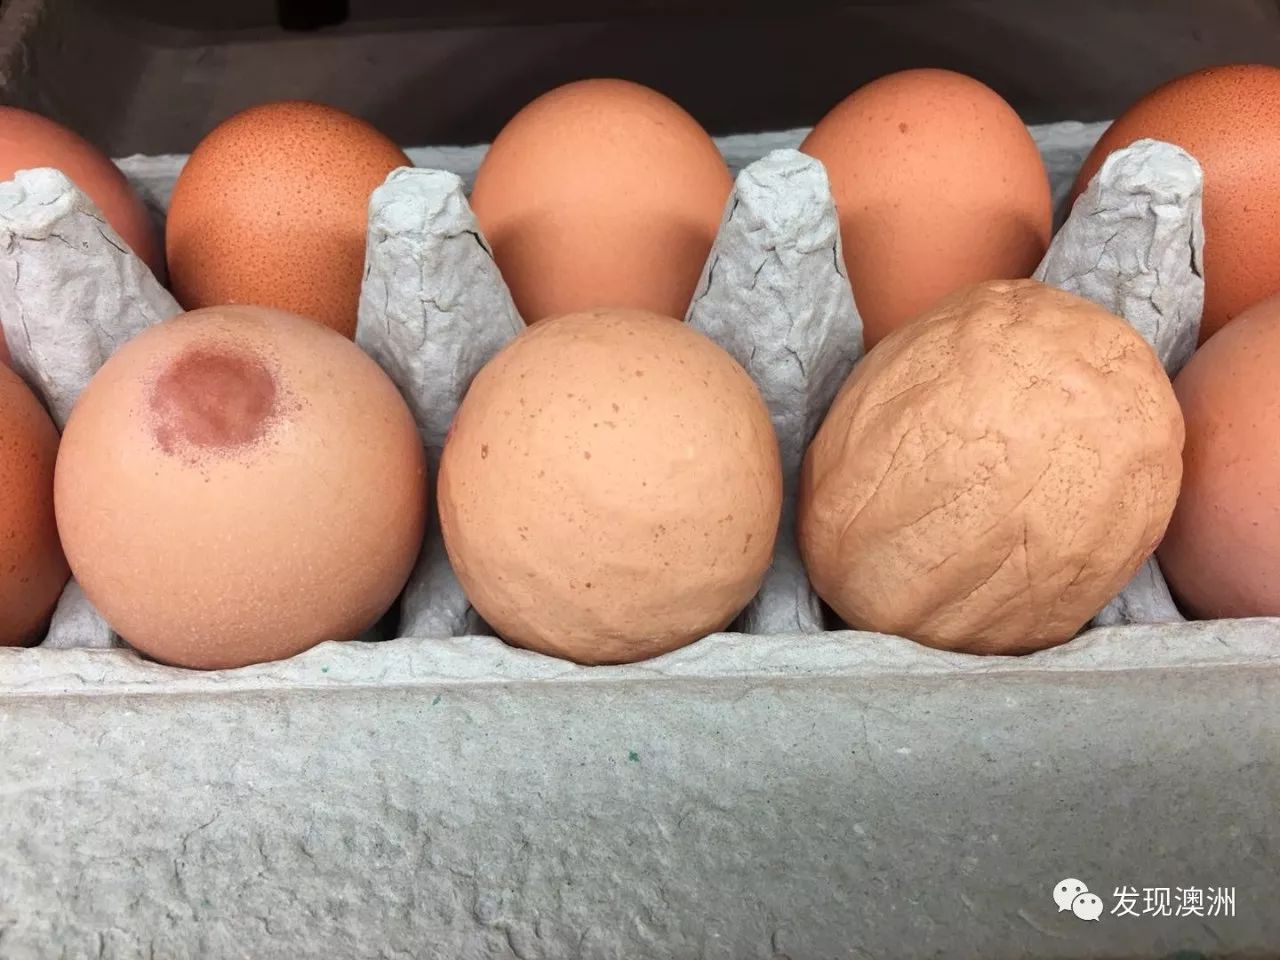 澳洲最大连锁超市wws惊现人造鸡蛋?